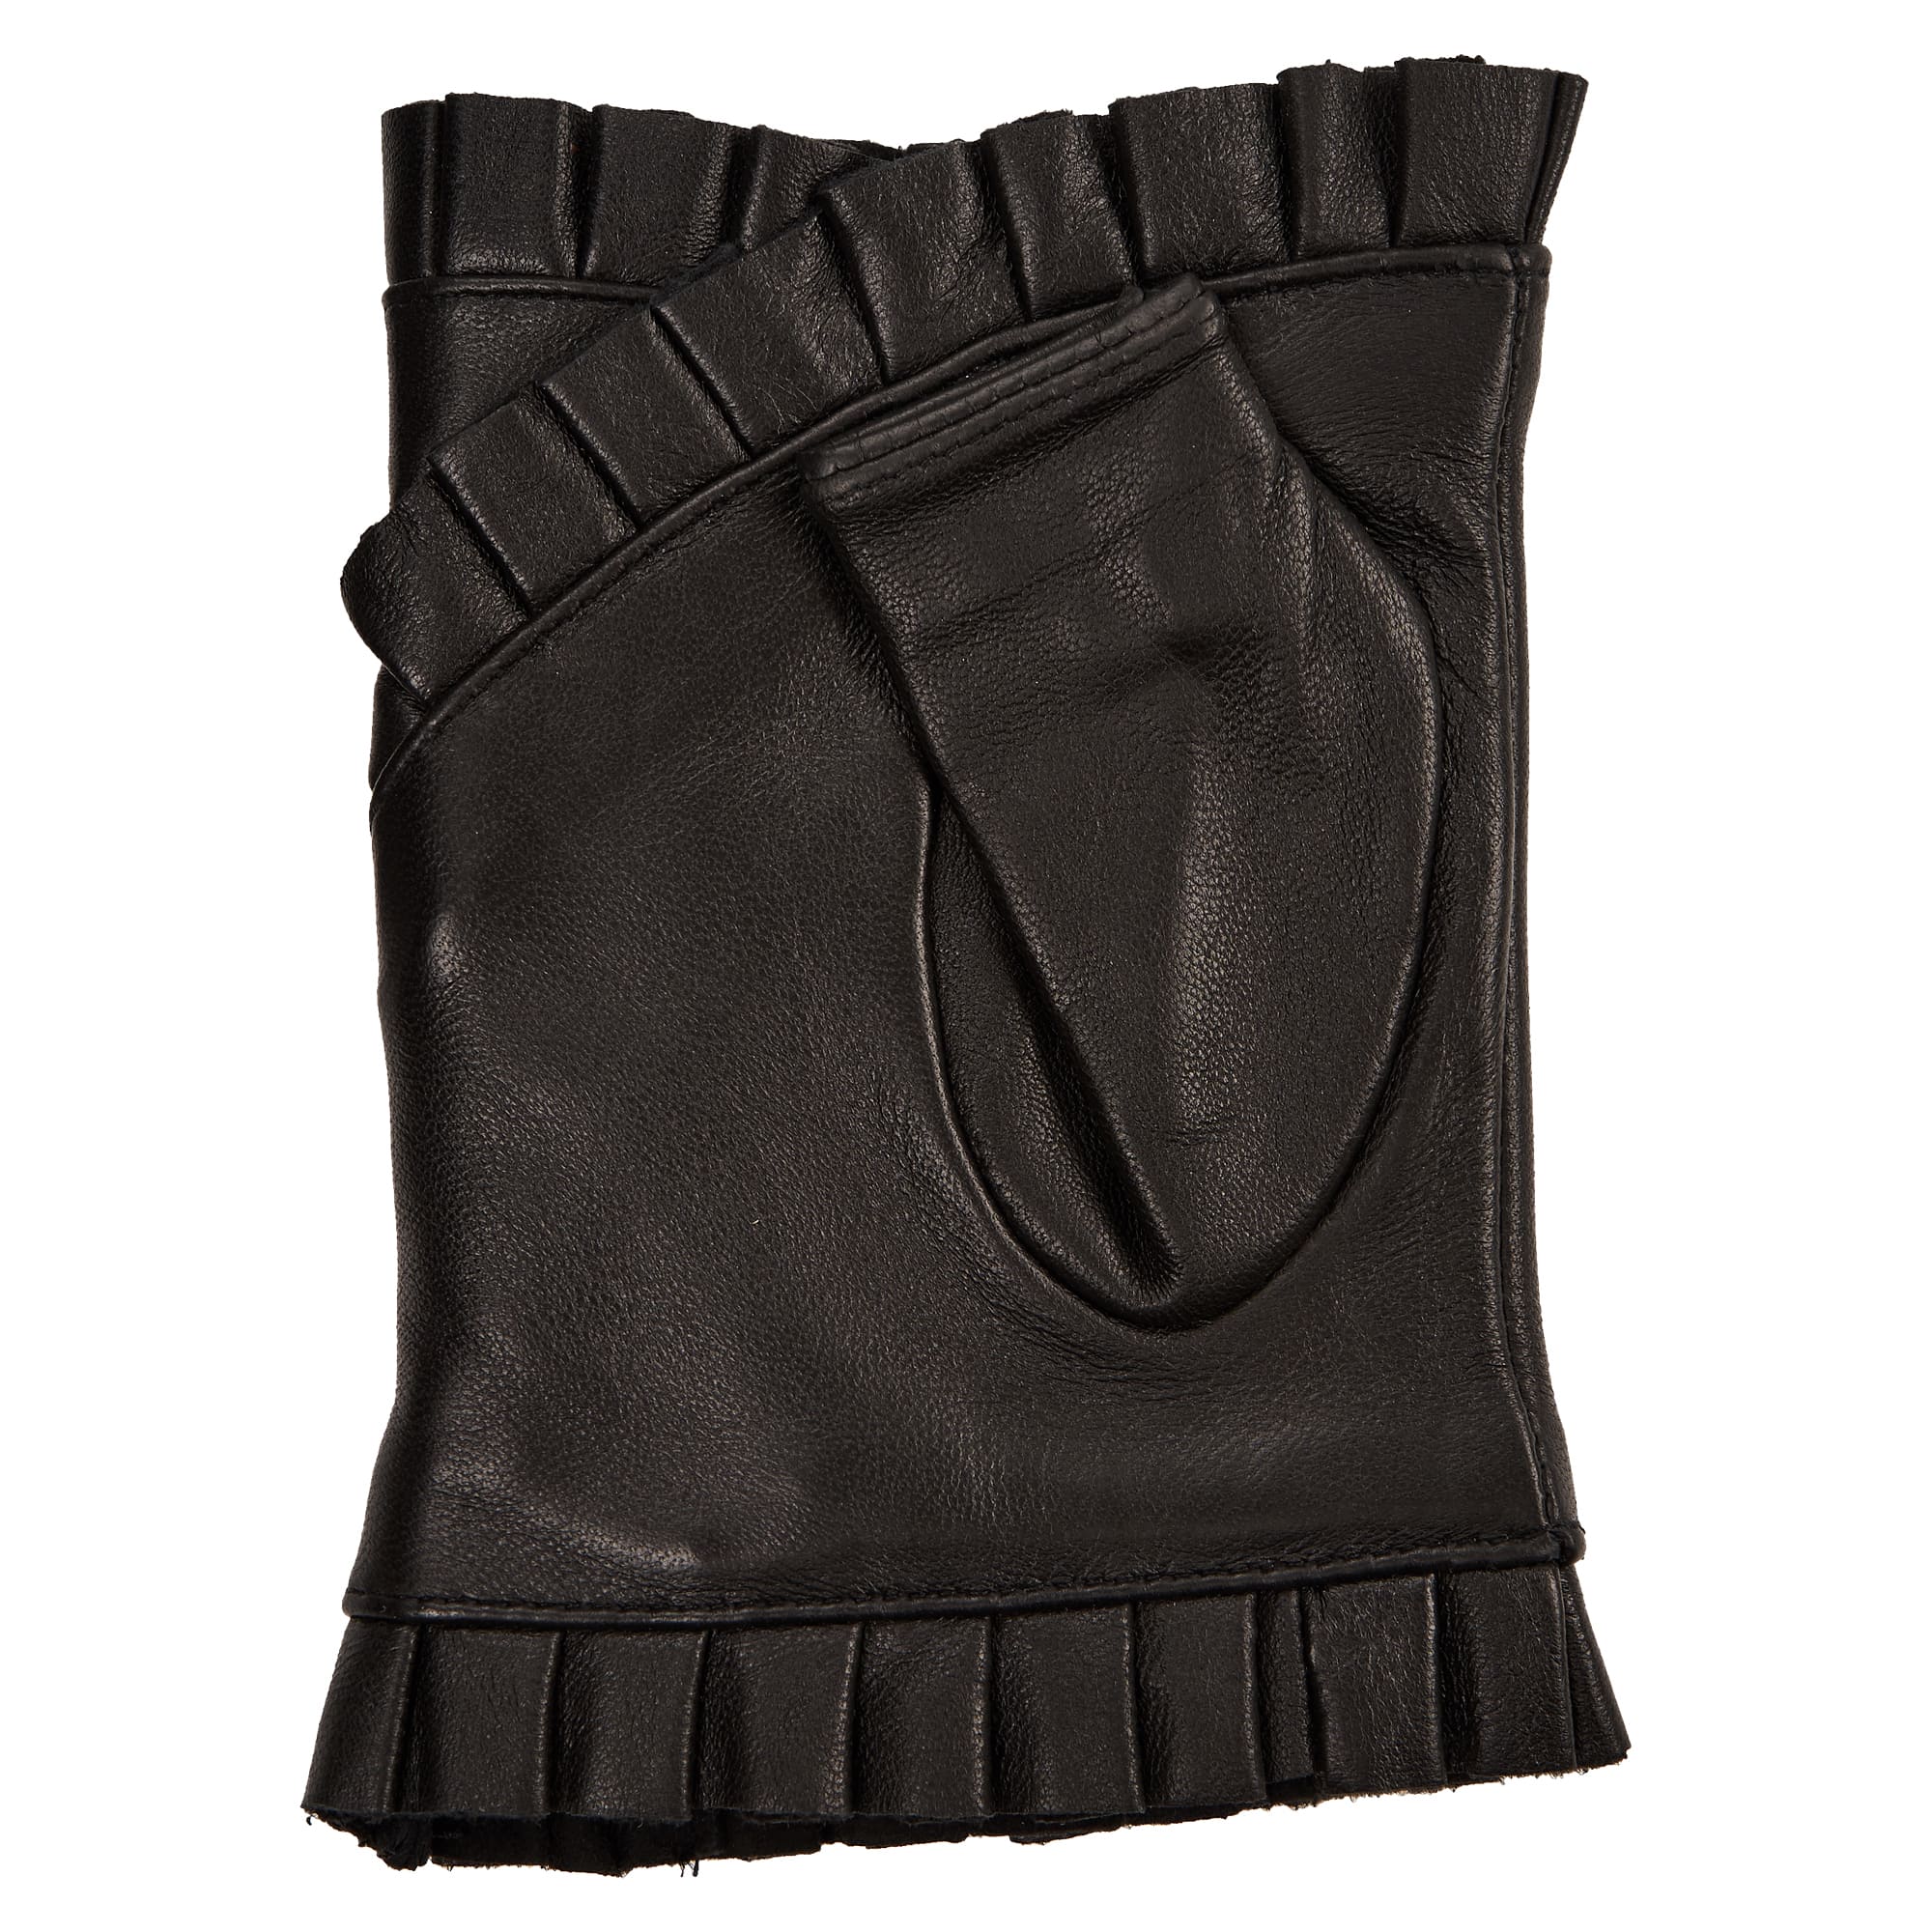 Др.Коффер H660154-236-04 перчатки женские (L), размер L, цвет черный - фото 3